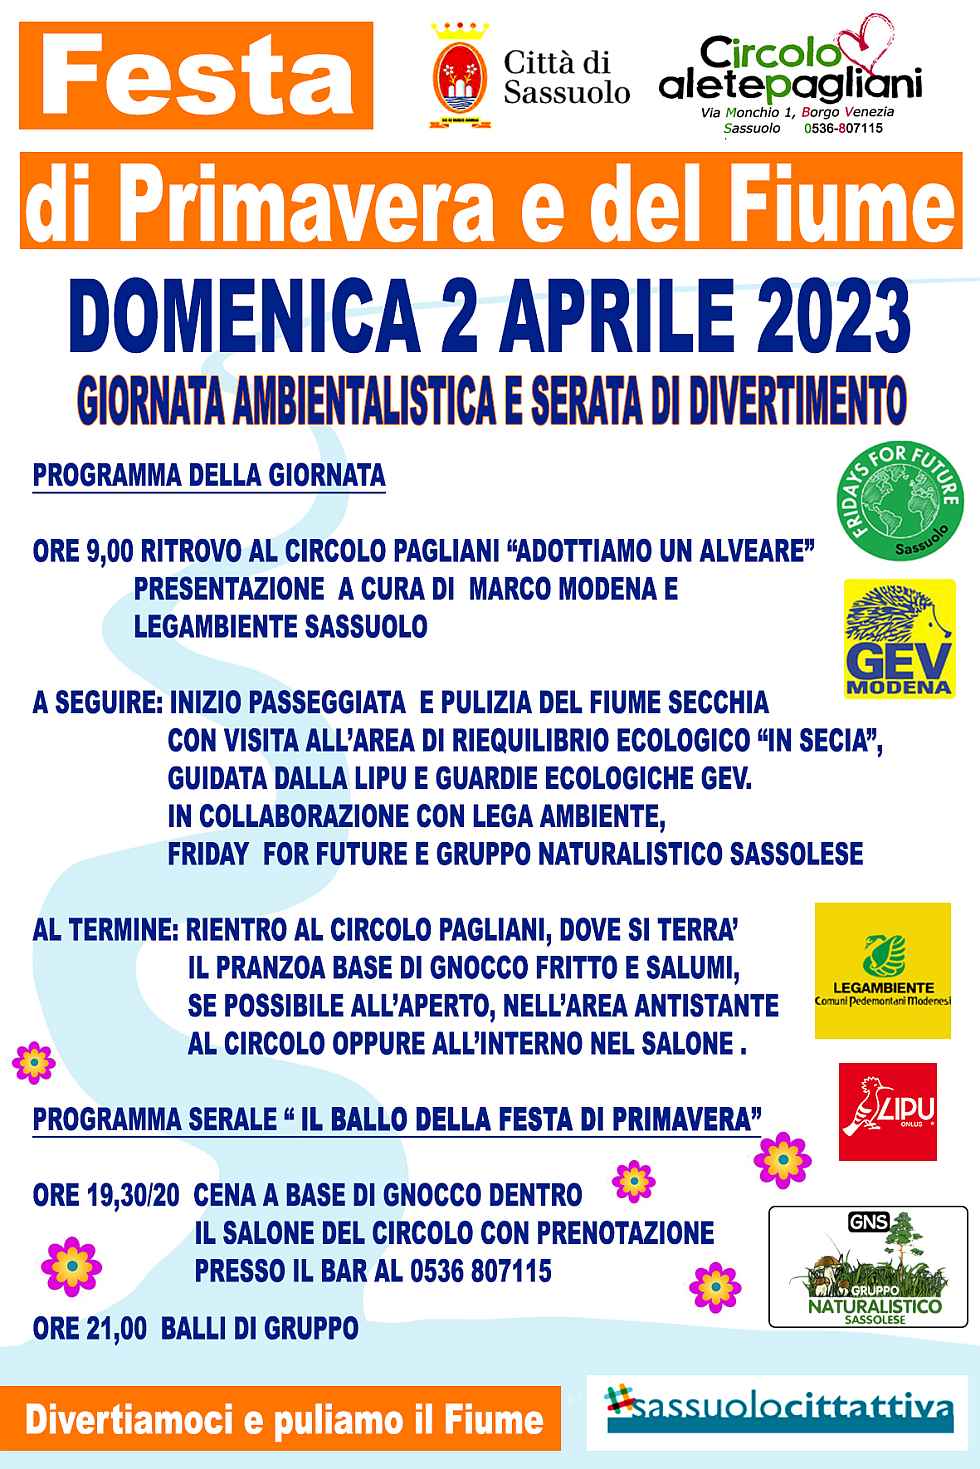 Sassuolo (MO)
"Festa di Primavera e del Fiume"
2 Aprile 2023